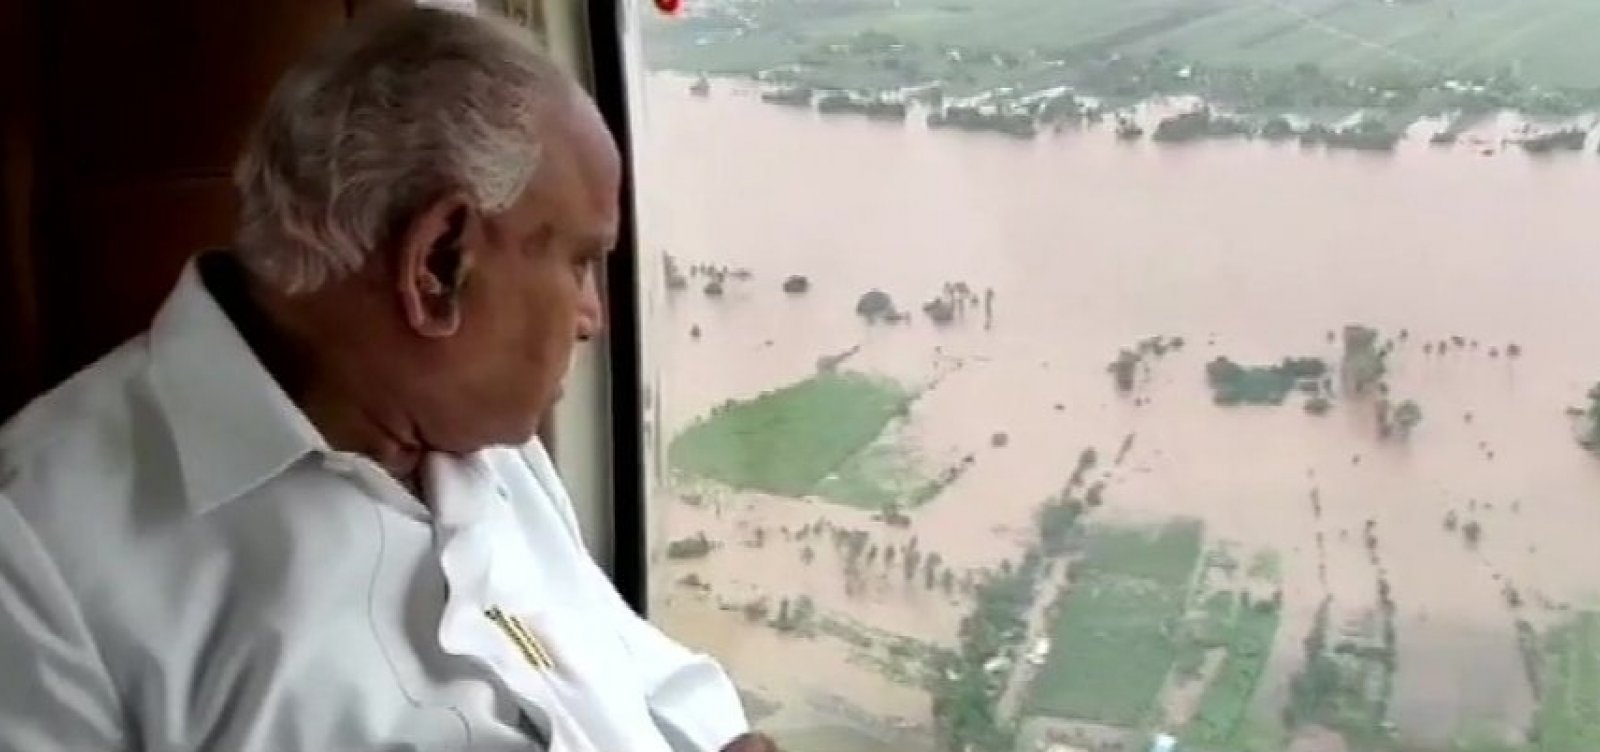 Inundações deixam 28 mortos e milhares desabrigados na Índia